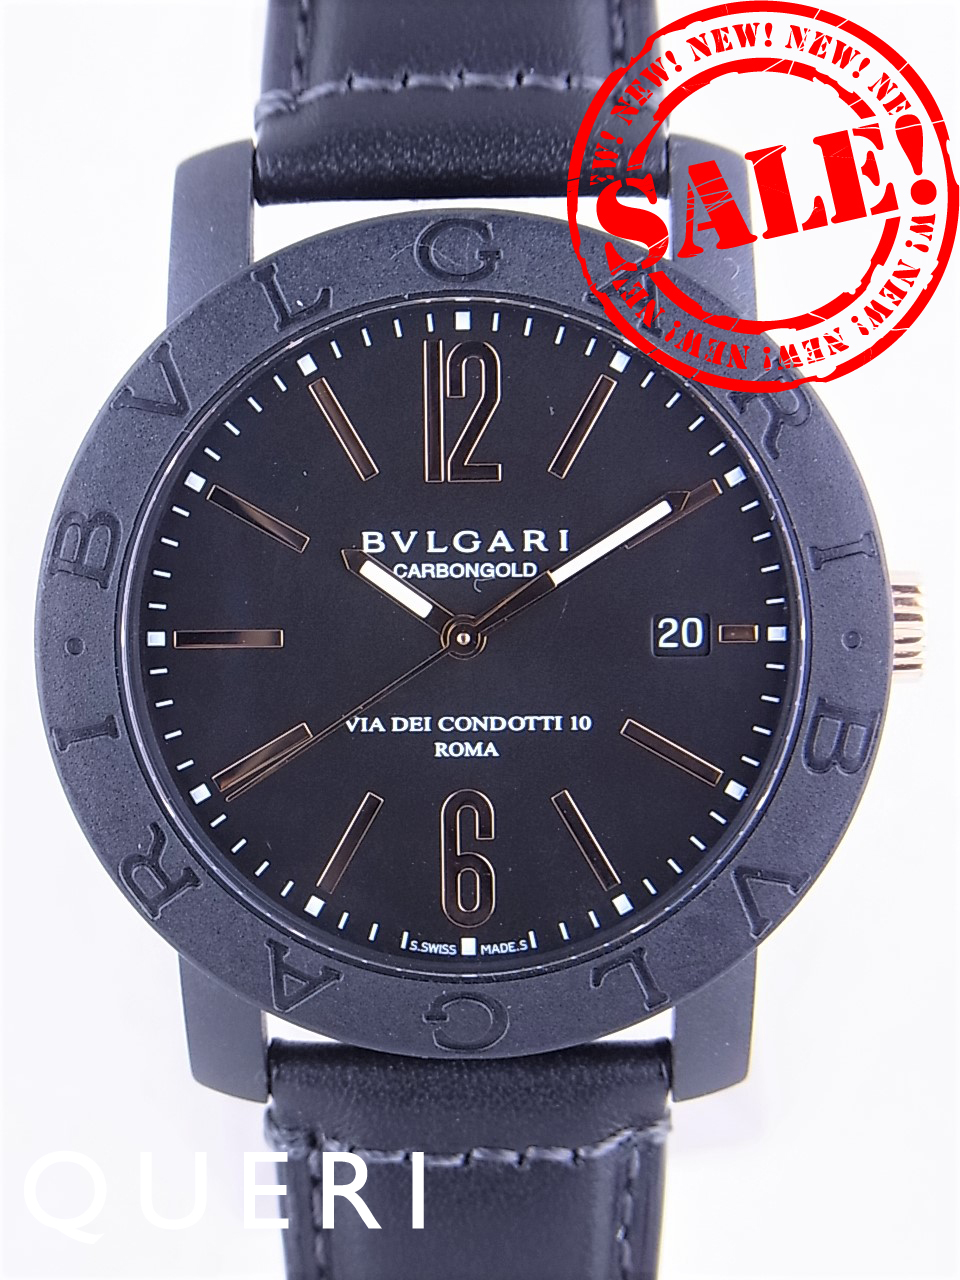 ブルガリ(bvlgari)時計通販・販売|新品 中古－ブランド時計販売のクエリ